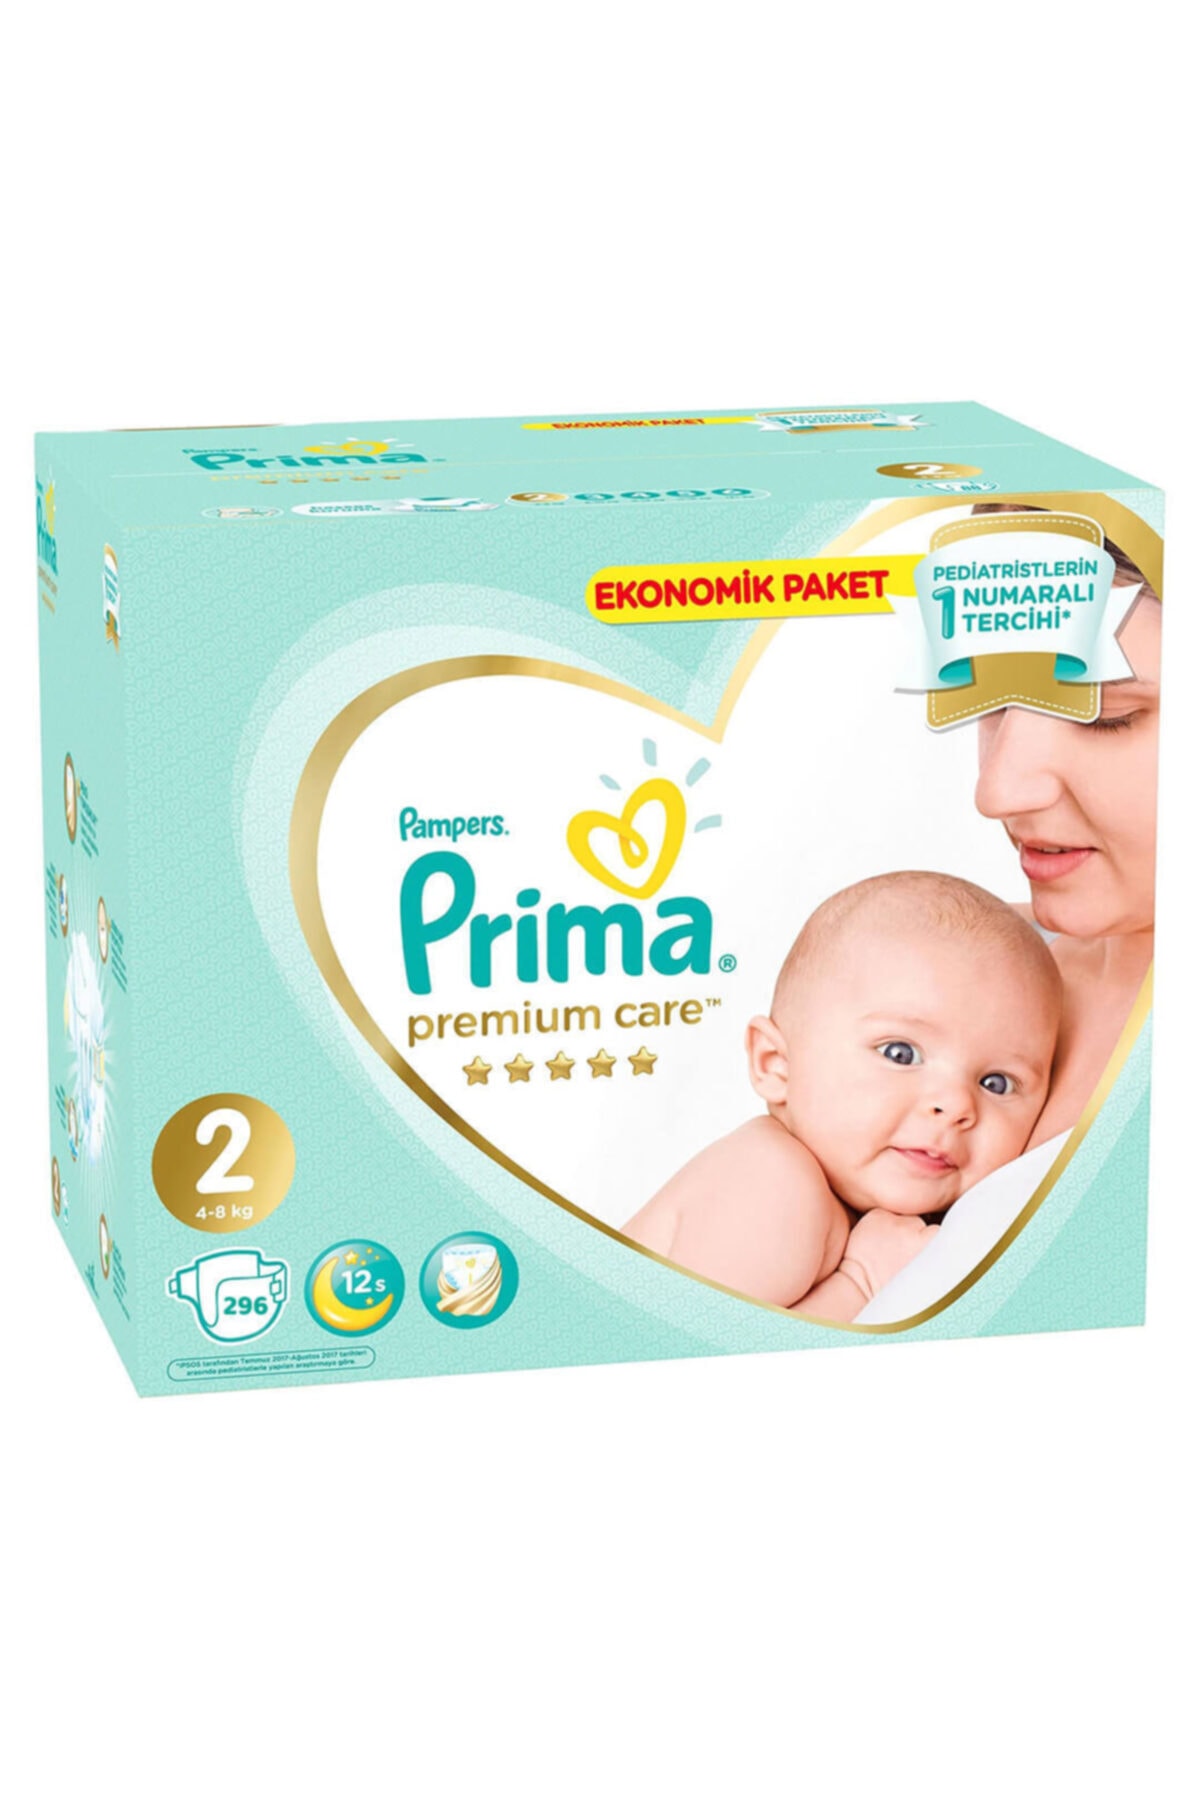 Prima Premium Care Fırsat Paketi 2 Beden 296 Adet